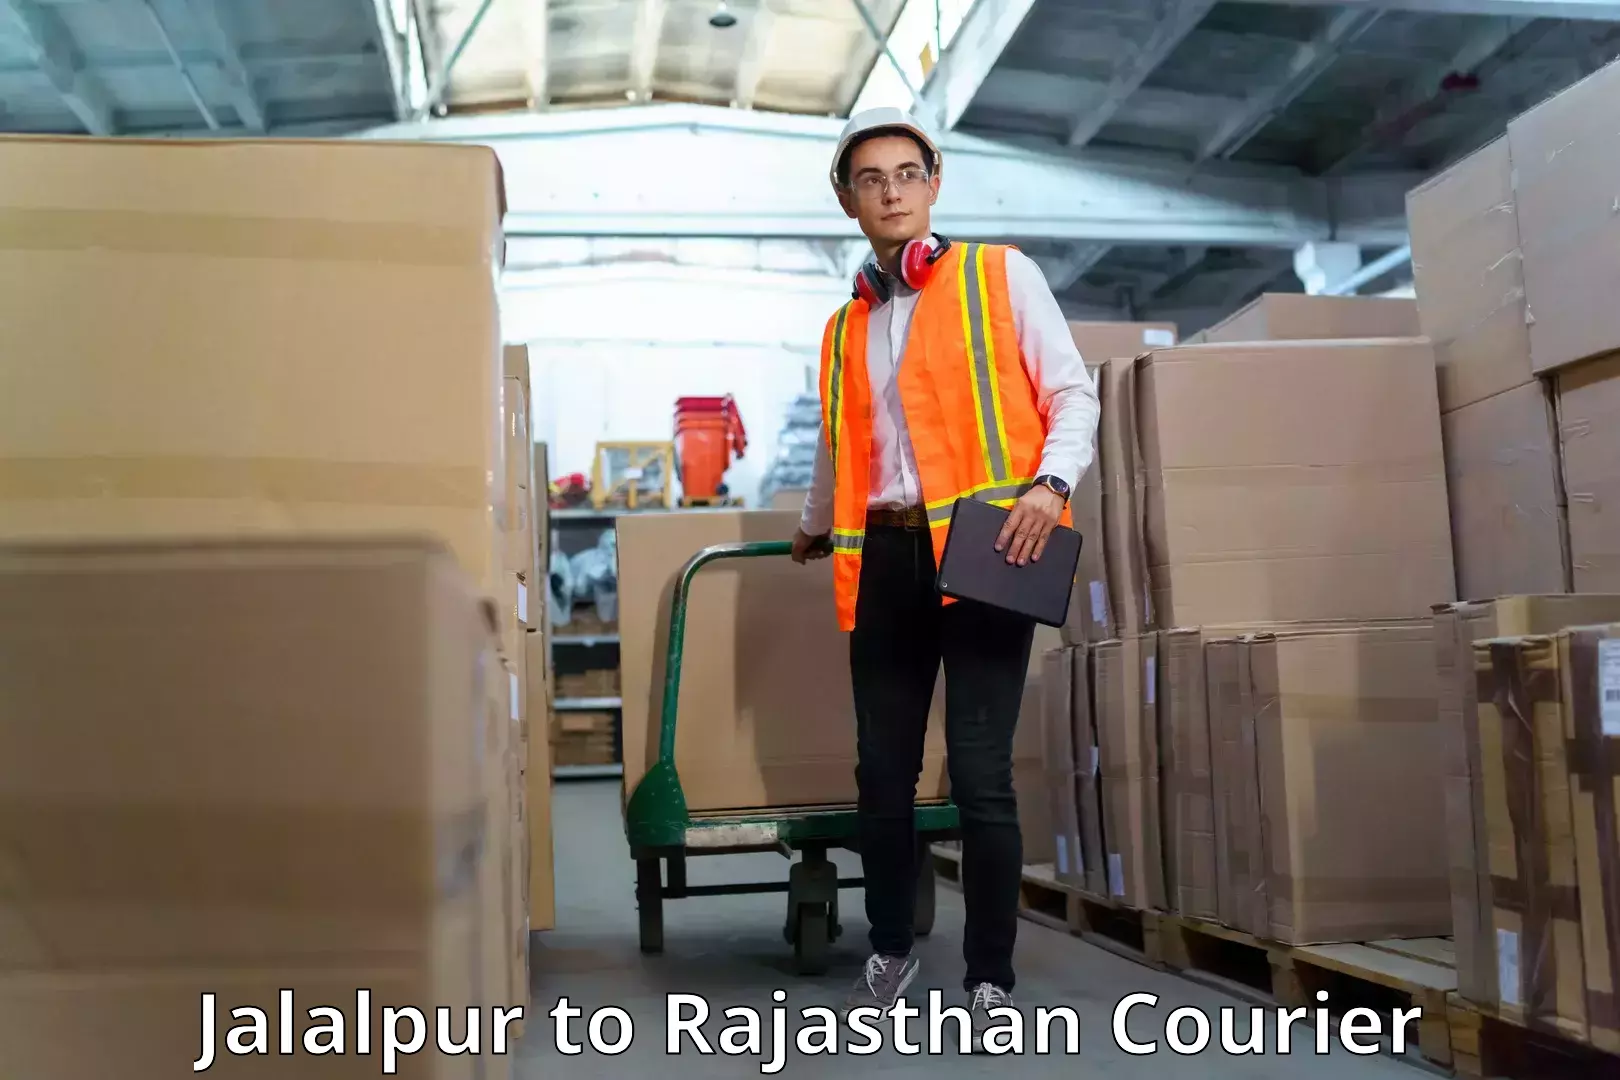 On-demand shipping options Jalalpur to IIIT Kota